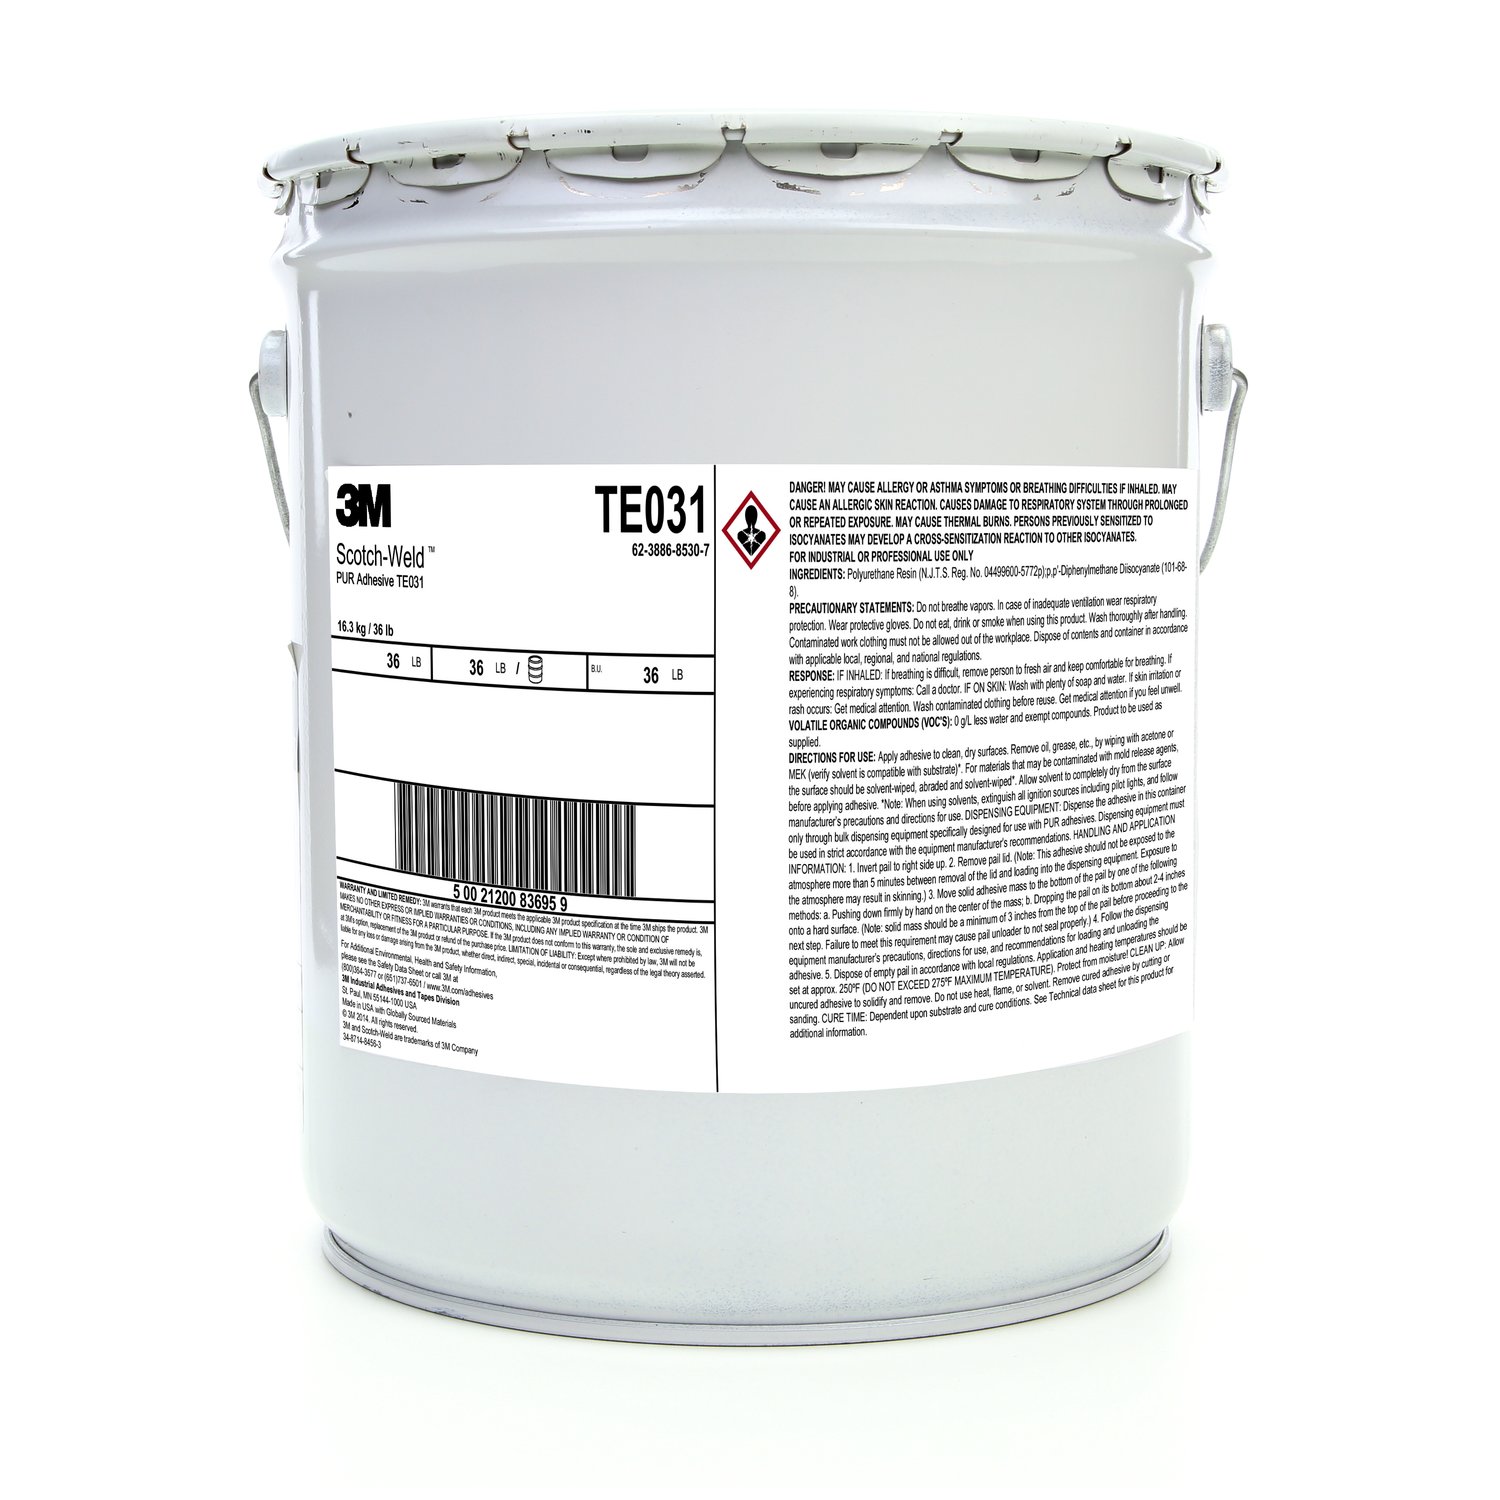 7100096731 - 3M Scotch-Weld PUR Adhesive TE031, Off-White, 5 Gallon (36 lb), Drum